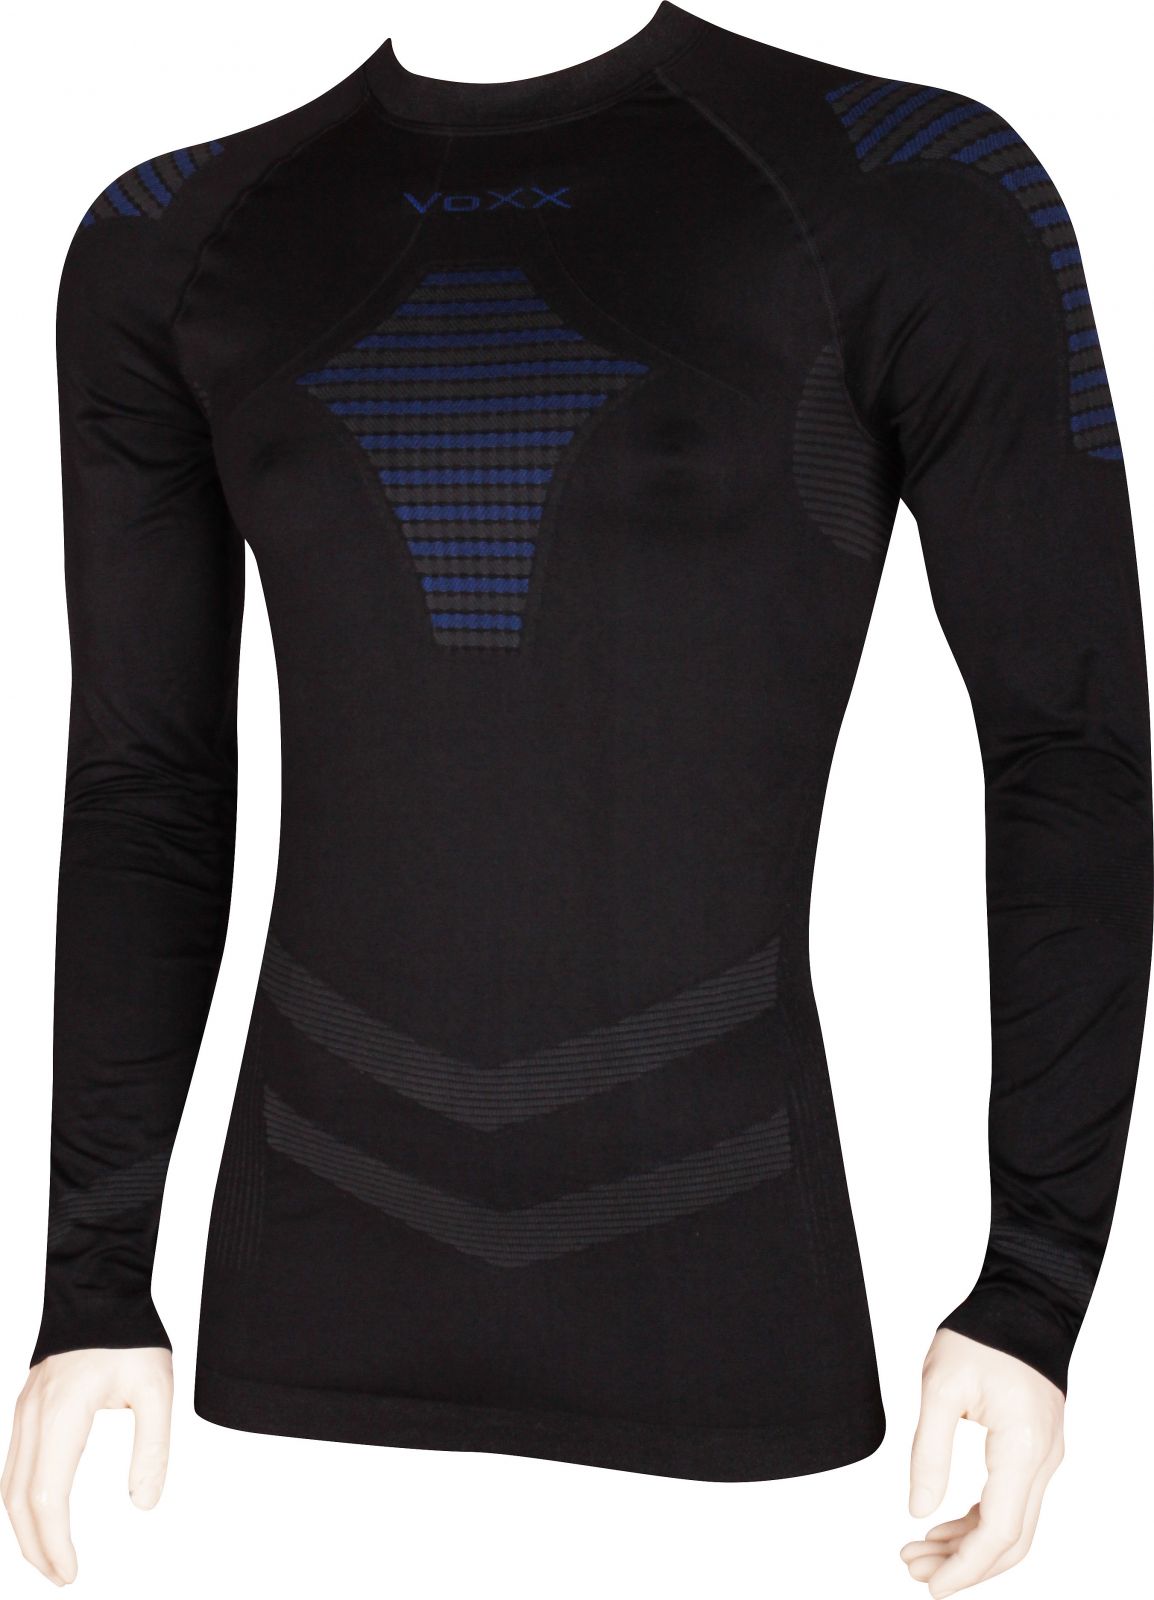 VoXX® AP02 pánské funkční tričko dlouhý rukáv černá / modrá